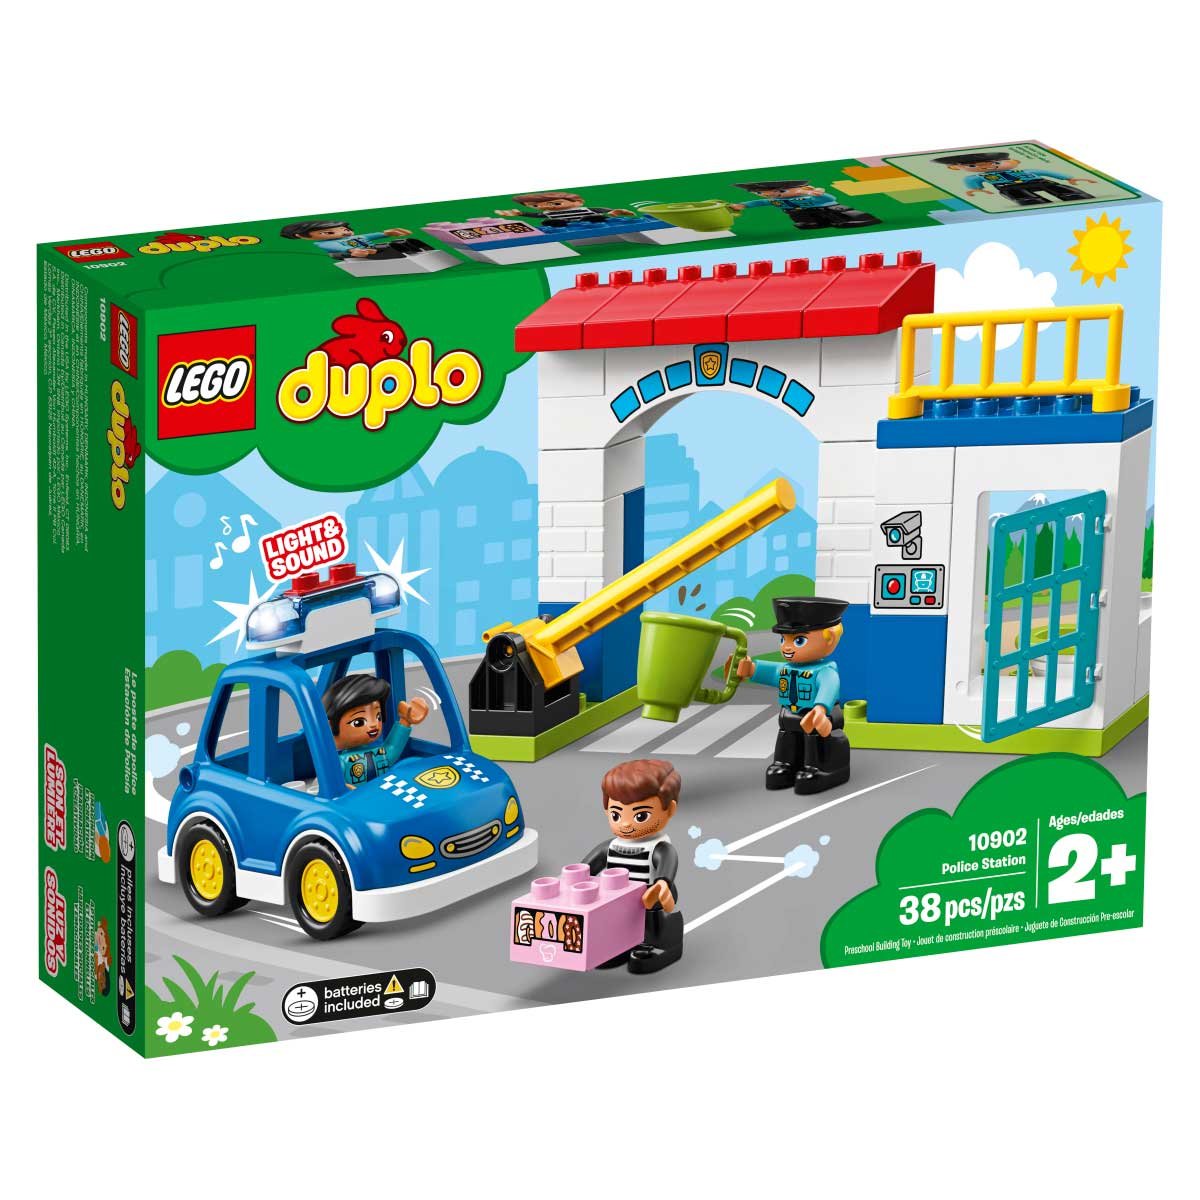 Duplo Estación de Policía Lego